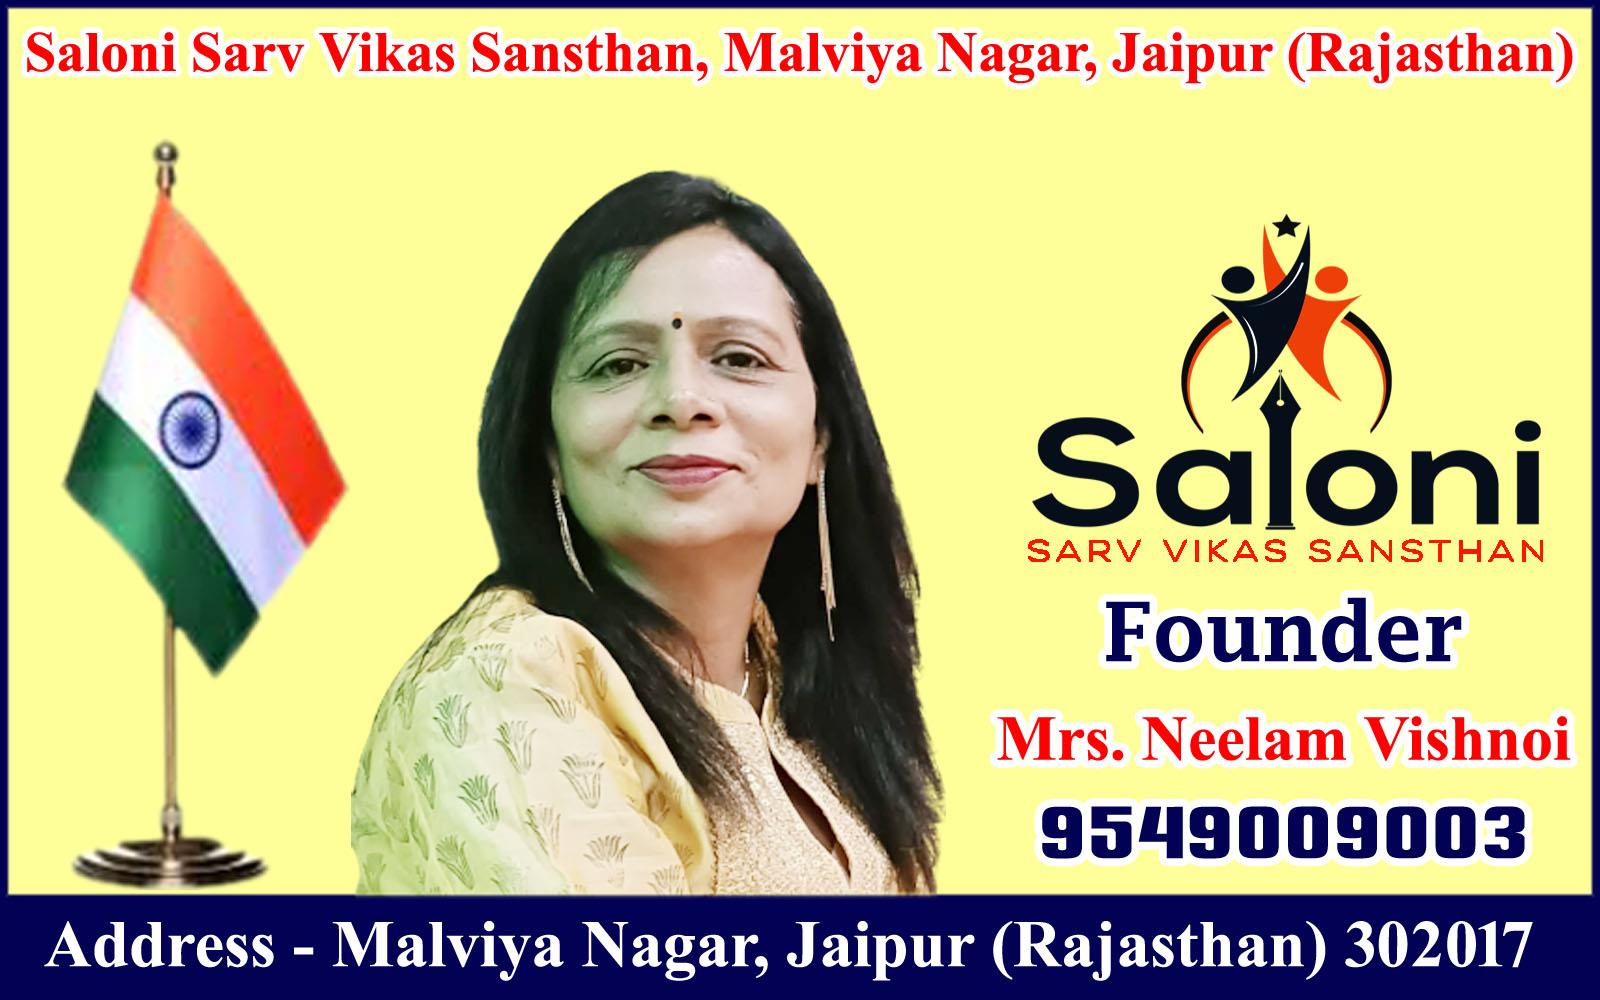 Neelam Vishnoi - Saloni Sarv Vikas Sansthan, Malviya Nagar, Jaipur (Rajasthan)